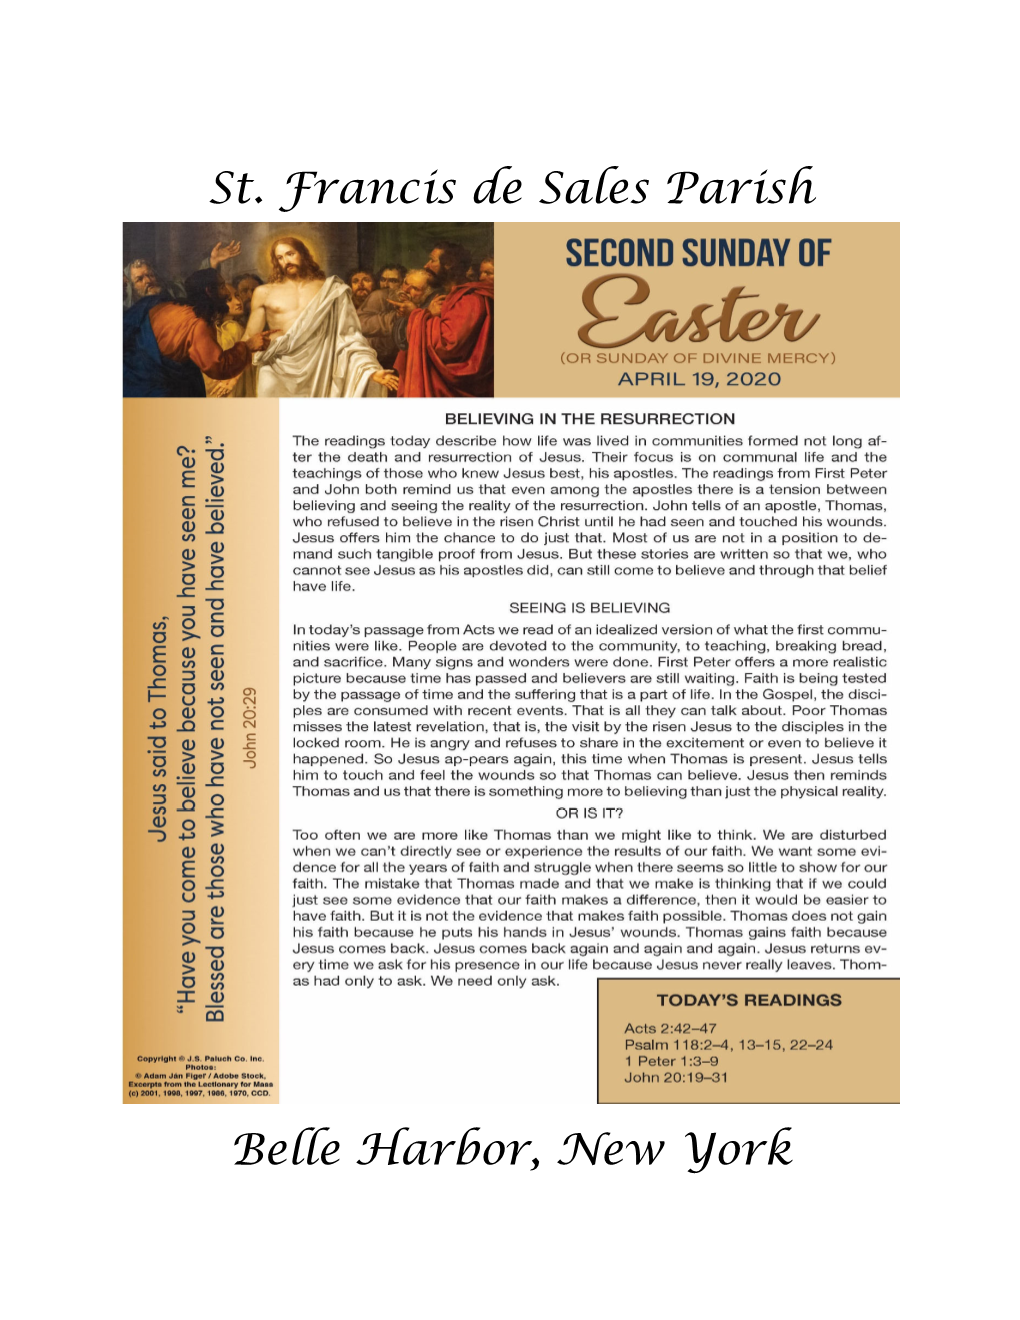 St. Francis De Sales Parish Belle Harbor, New York